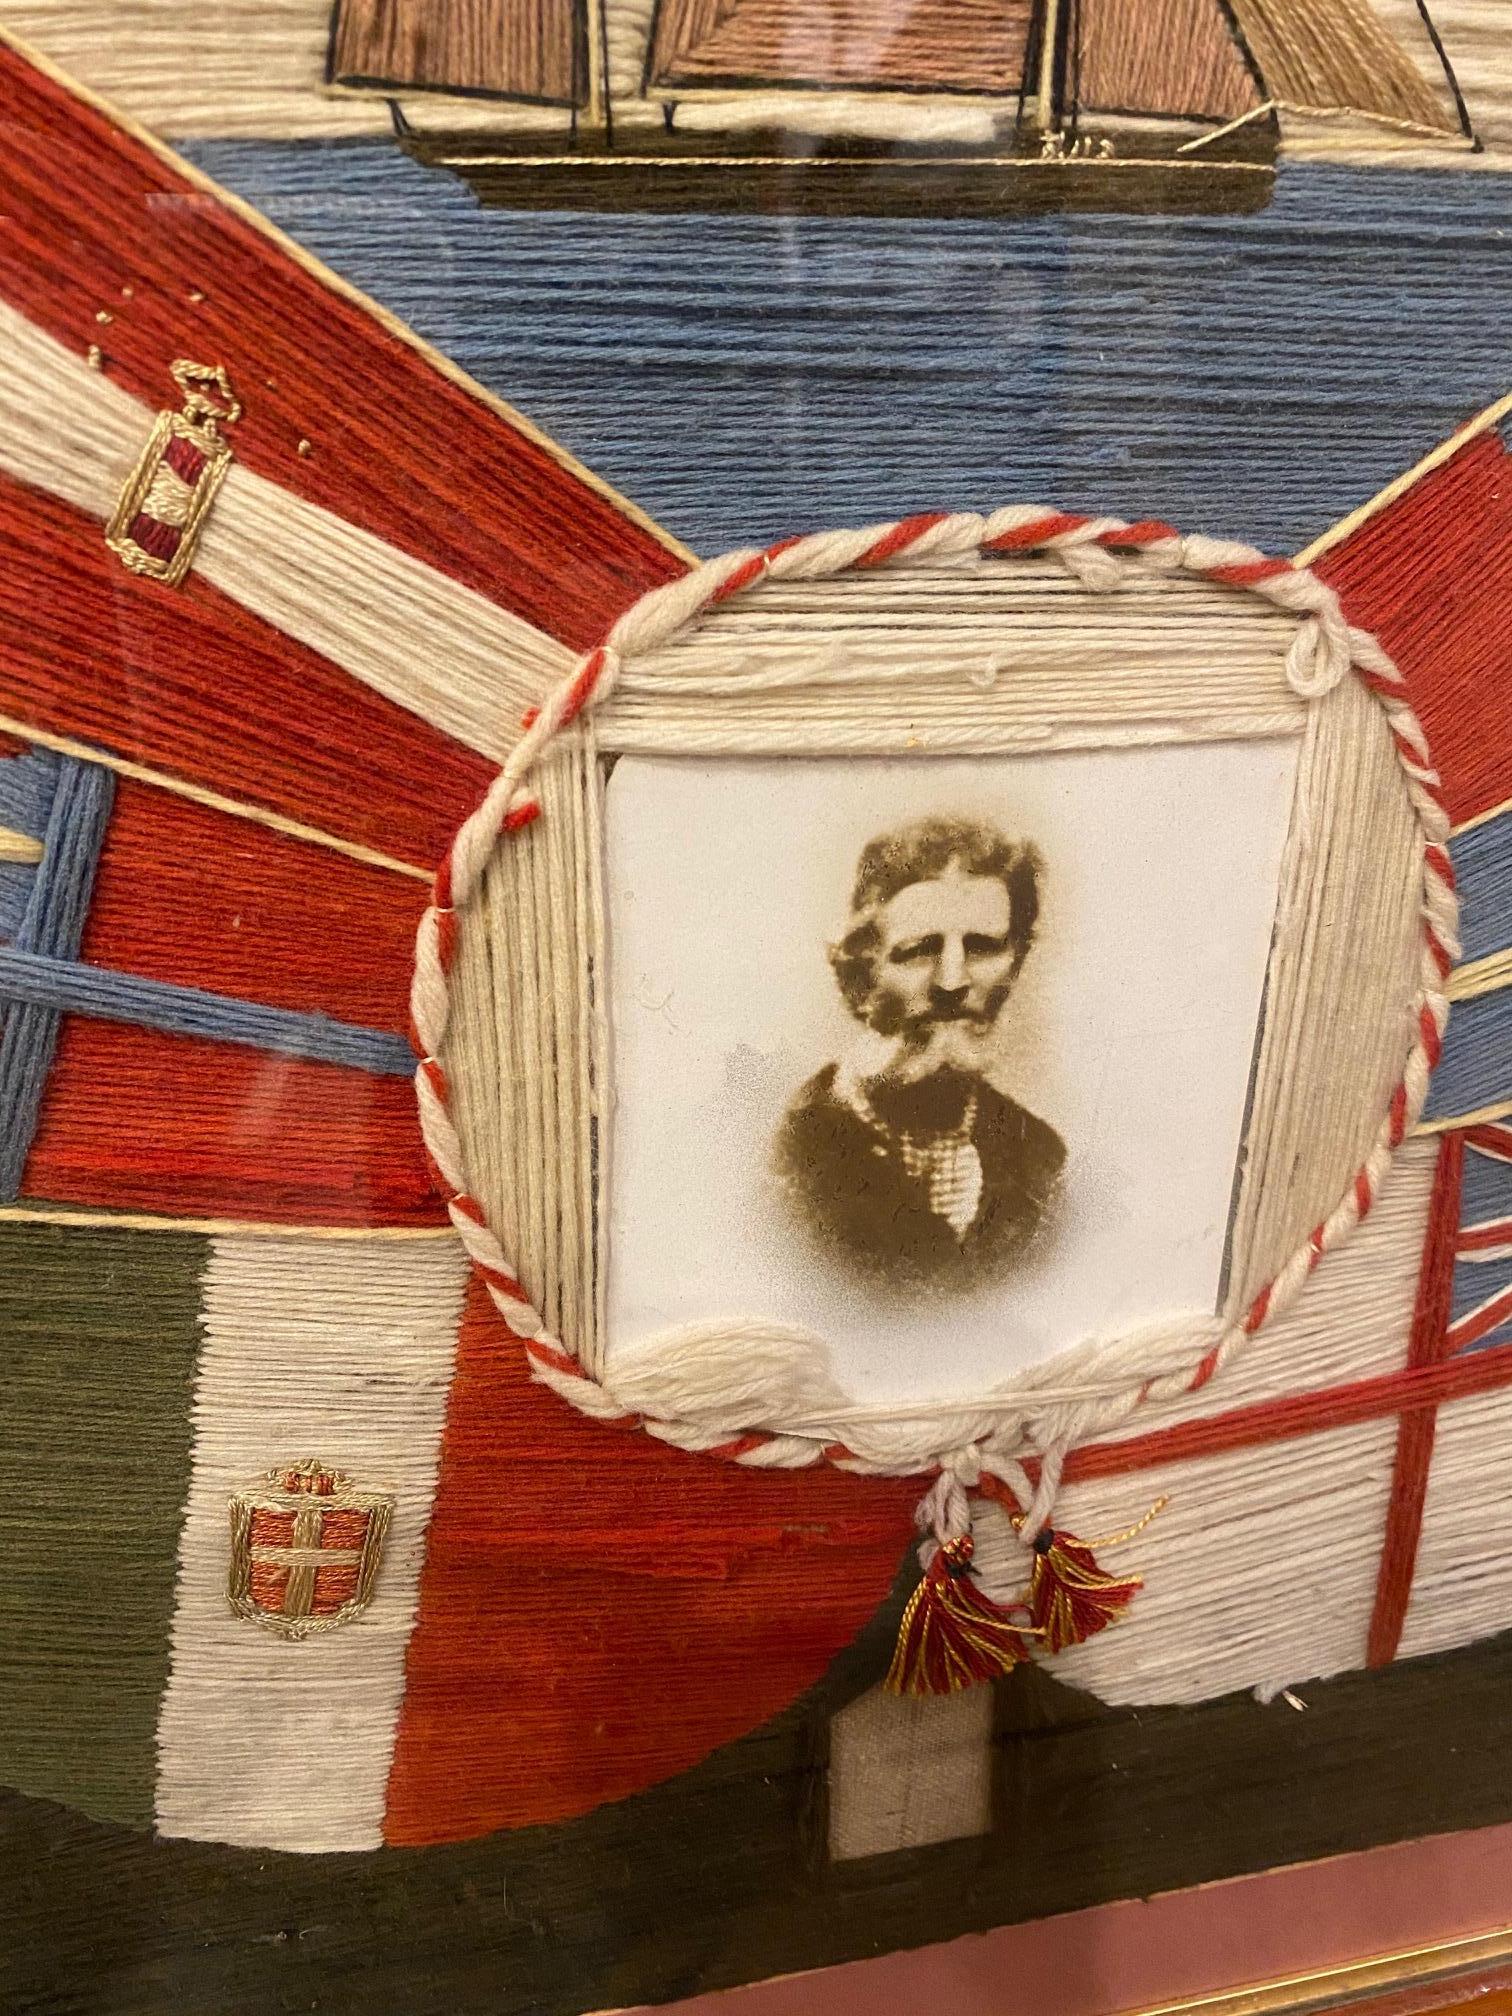 Sehr ungewöhnlich 19. Jahrhundert abgestimmt Paar Seemanns Yachting Woolies, um 1870, ein echtes Paar von Wollarbeiten mit Spiegelbildern der gleichen Yawl getakelten Yacht, und zeitgenössische Fotografien der Mann und Frau Segler umgeben von den